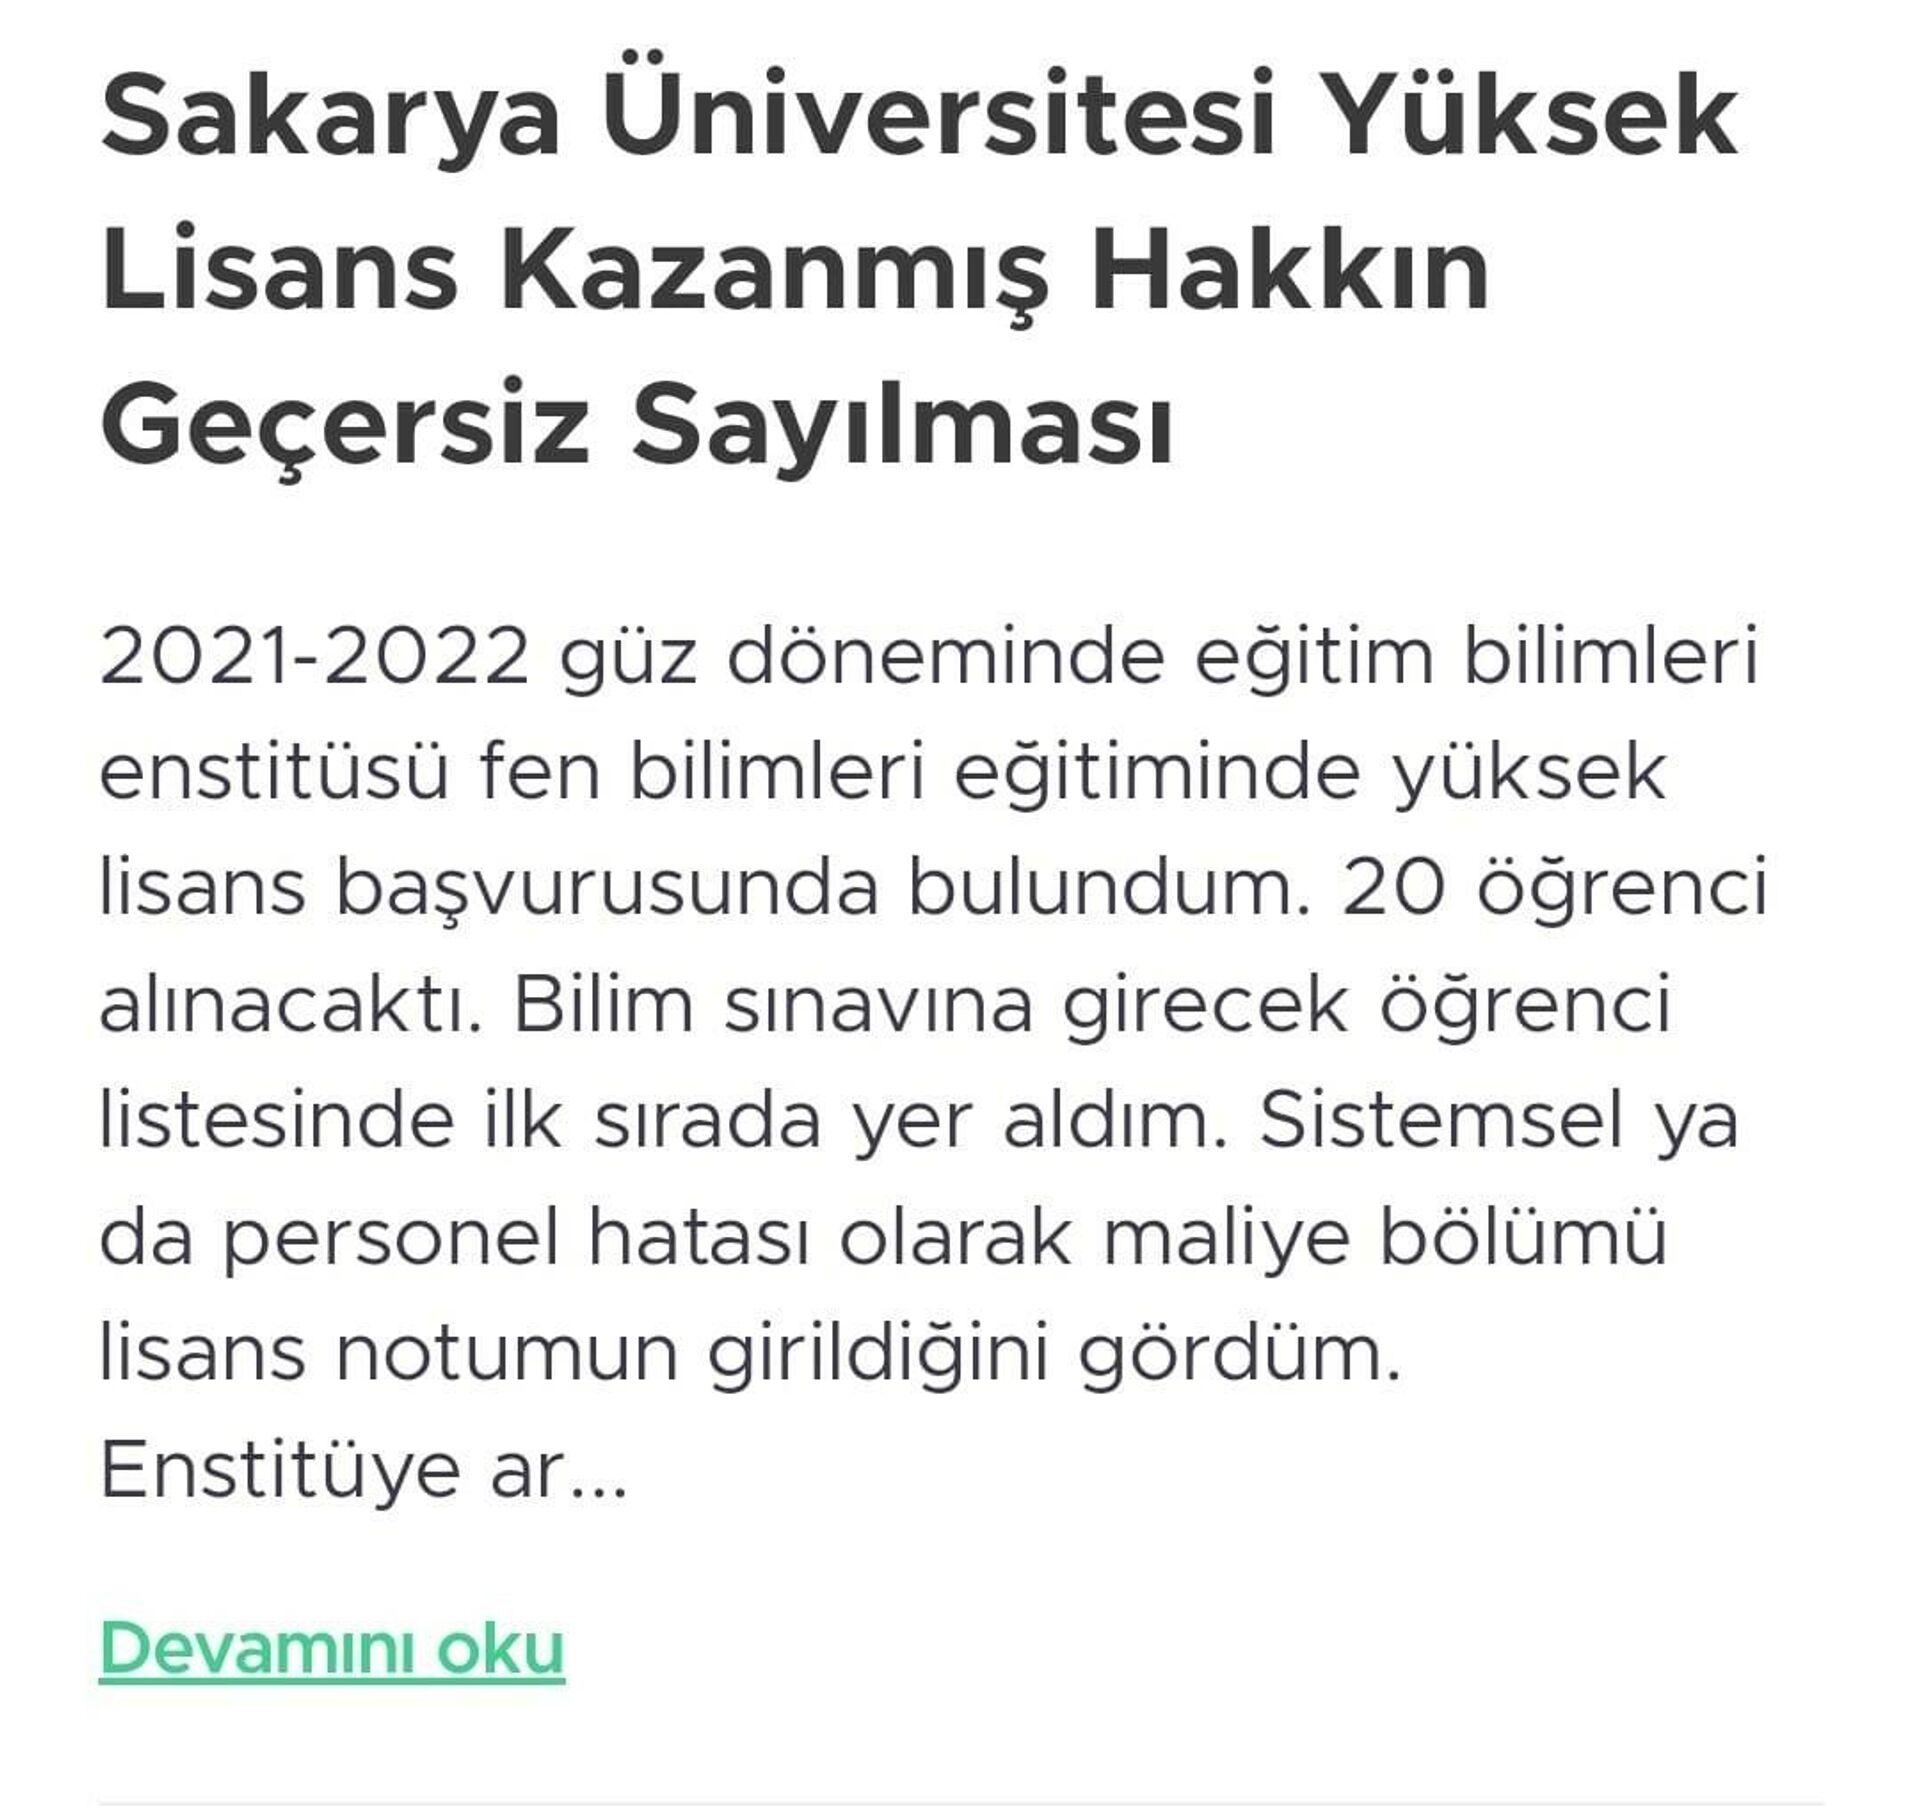 
Sakarya Üniversitesi'nde yüksek lisans yapmak için sınava giren ve adını kazananlar listesine yazdıran bir kişi üniversite tarafından reddedildi. - Sputnik Türkiye, 1920, 23.01.2022